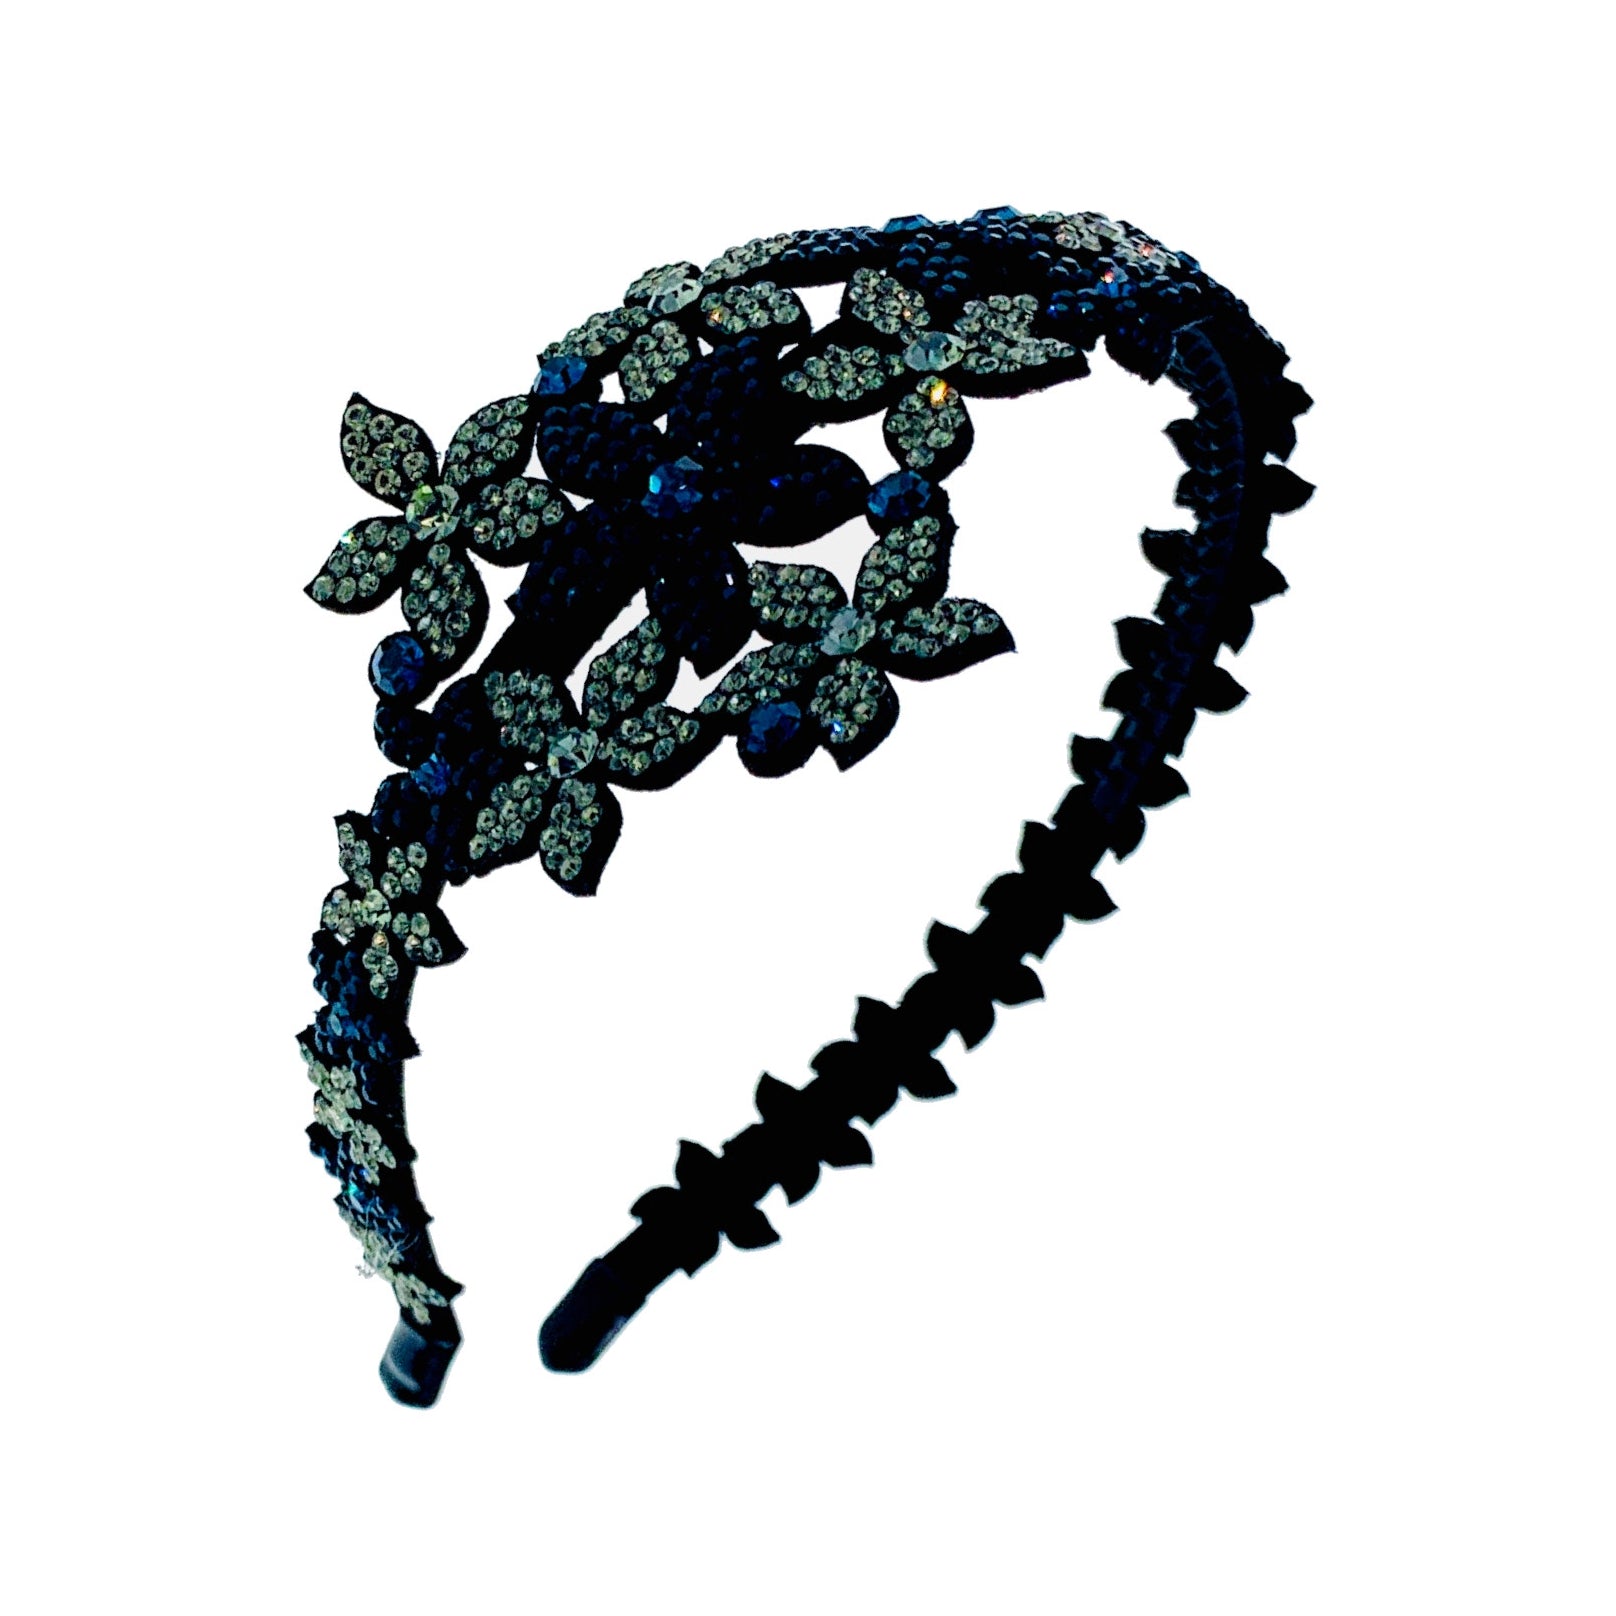 Senta Handmade Flowers Stars Headband Hairband use Swarovski ELM Crystals, Headband - MOGHANT